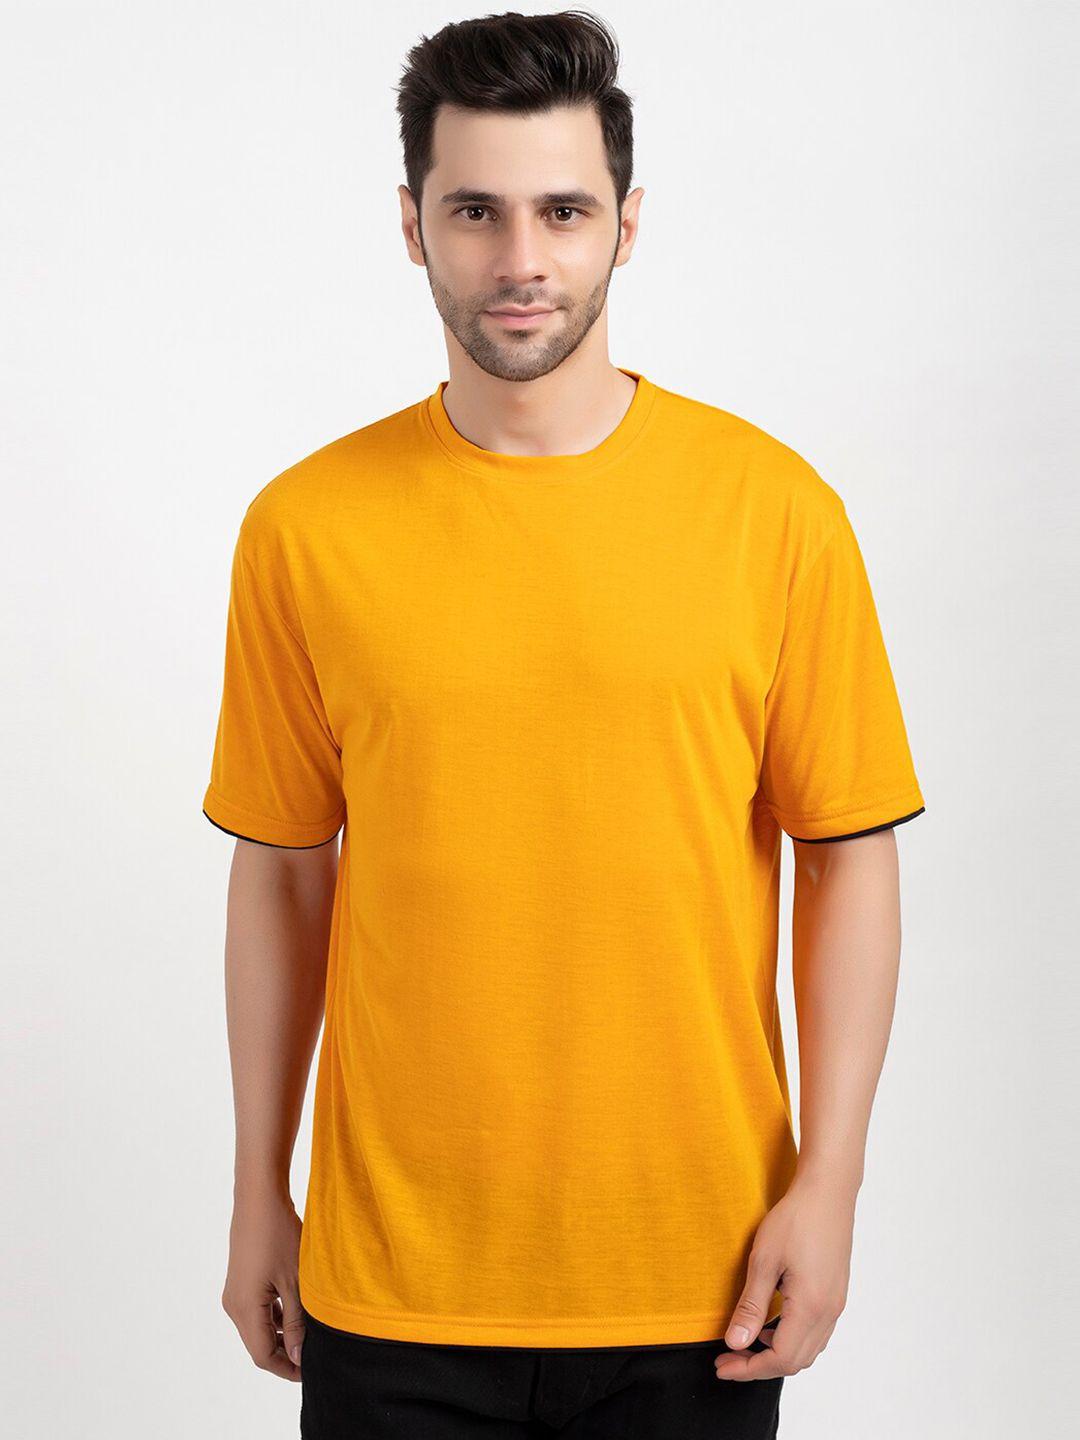 oakmans men mustard yellow cotton t-shirt